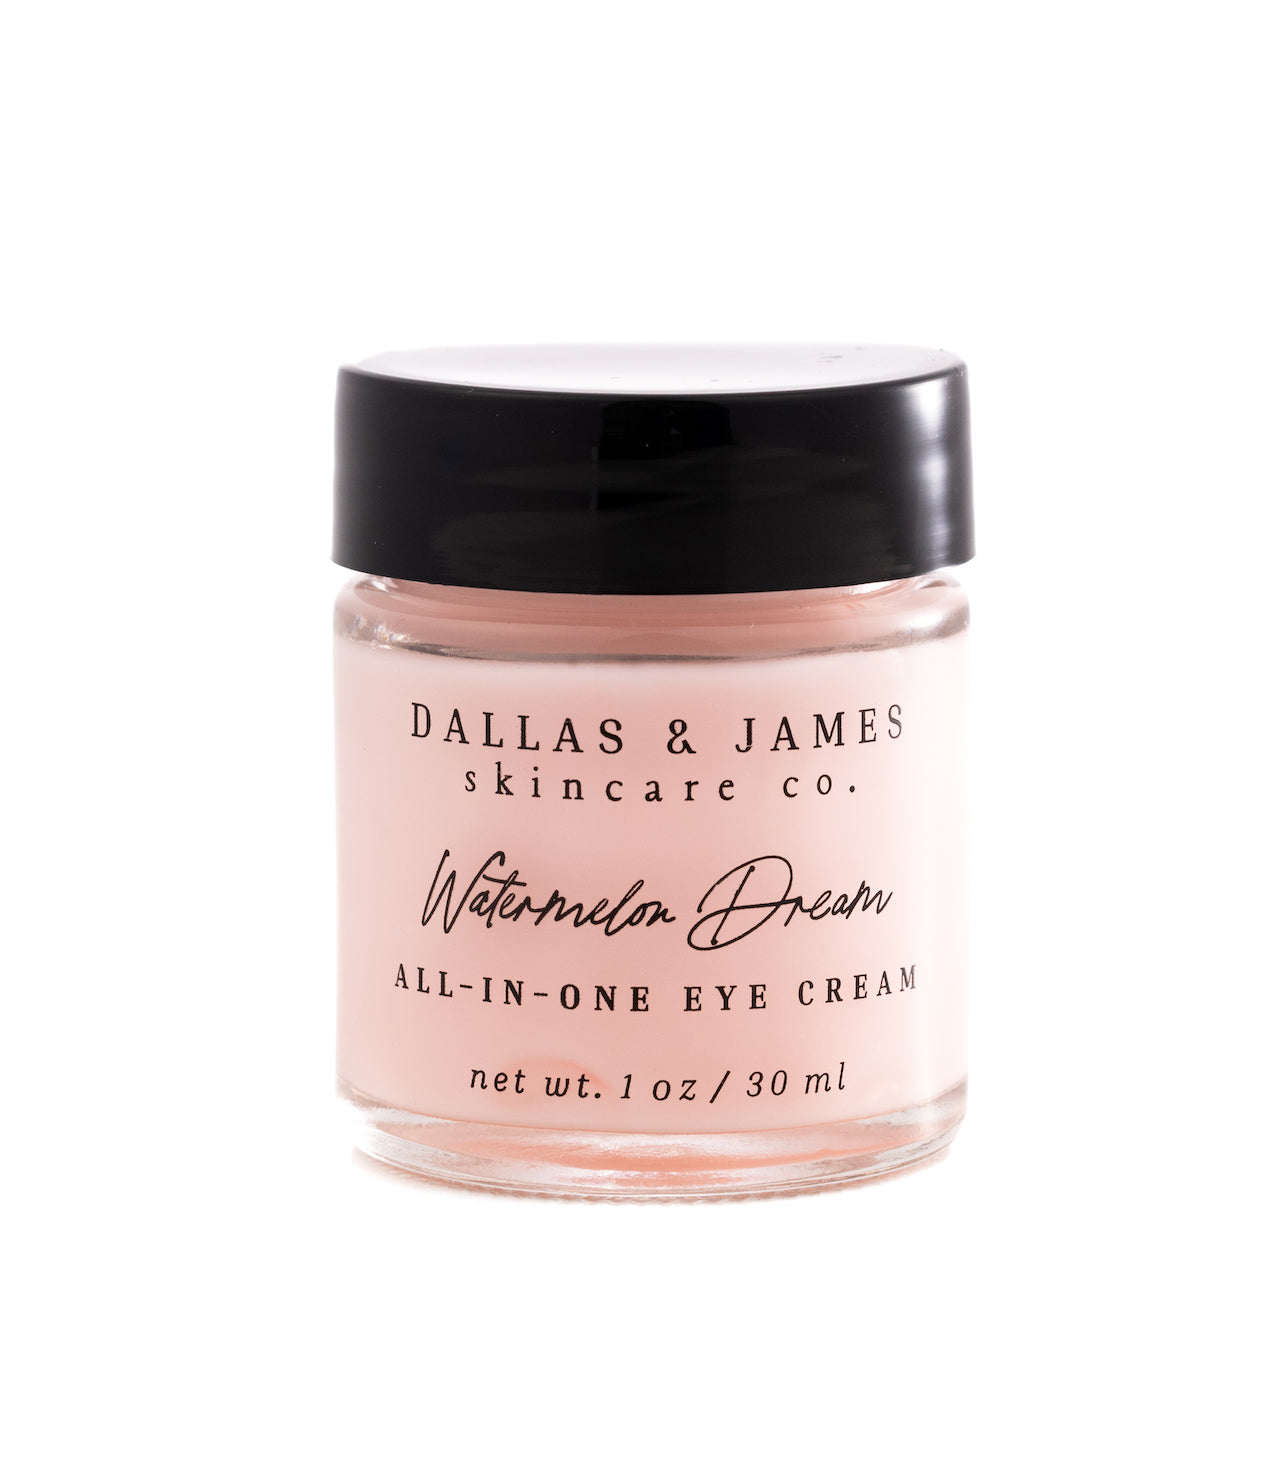 Dallas & James Skincare Co. Watermelon Dream All-In-One Eye Cream